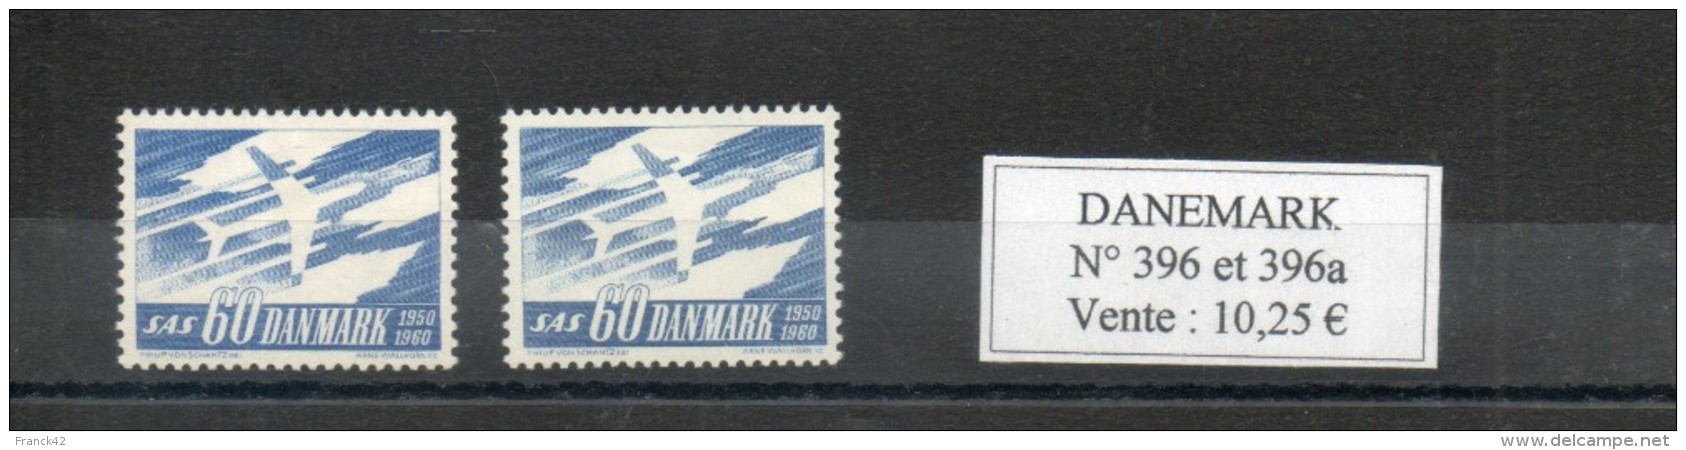 Danemark. SAS 1950-1960 - Unused Stamps